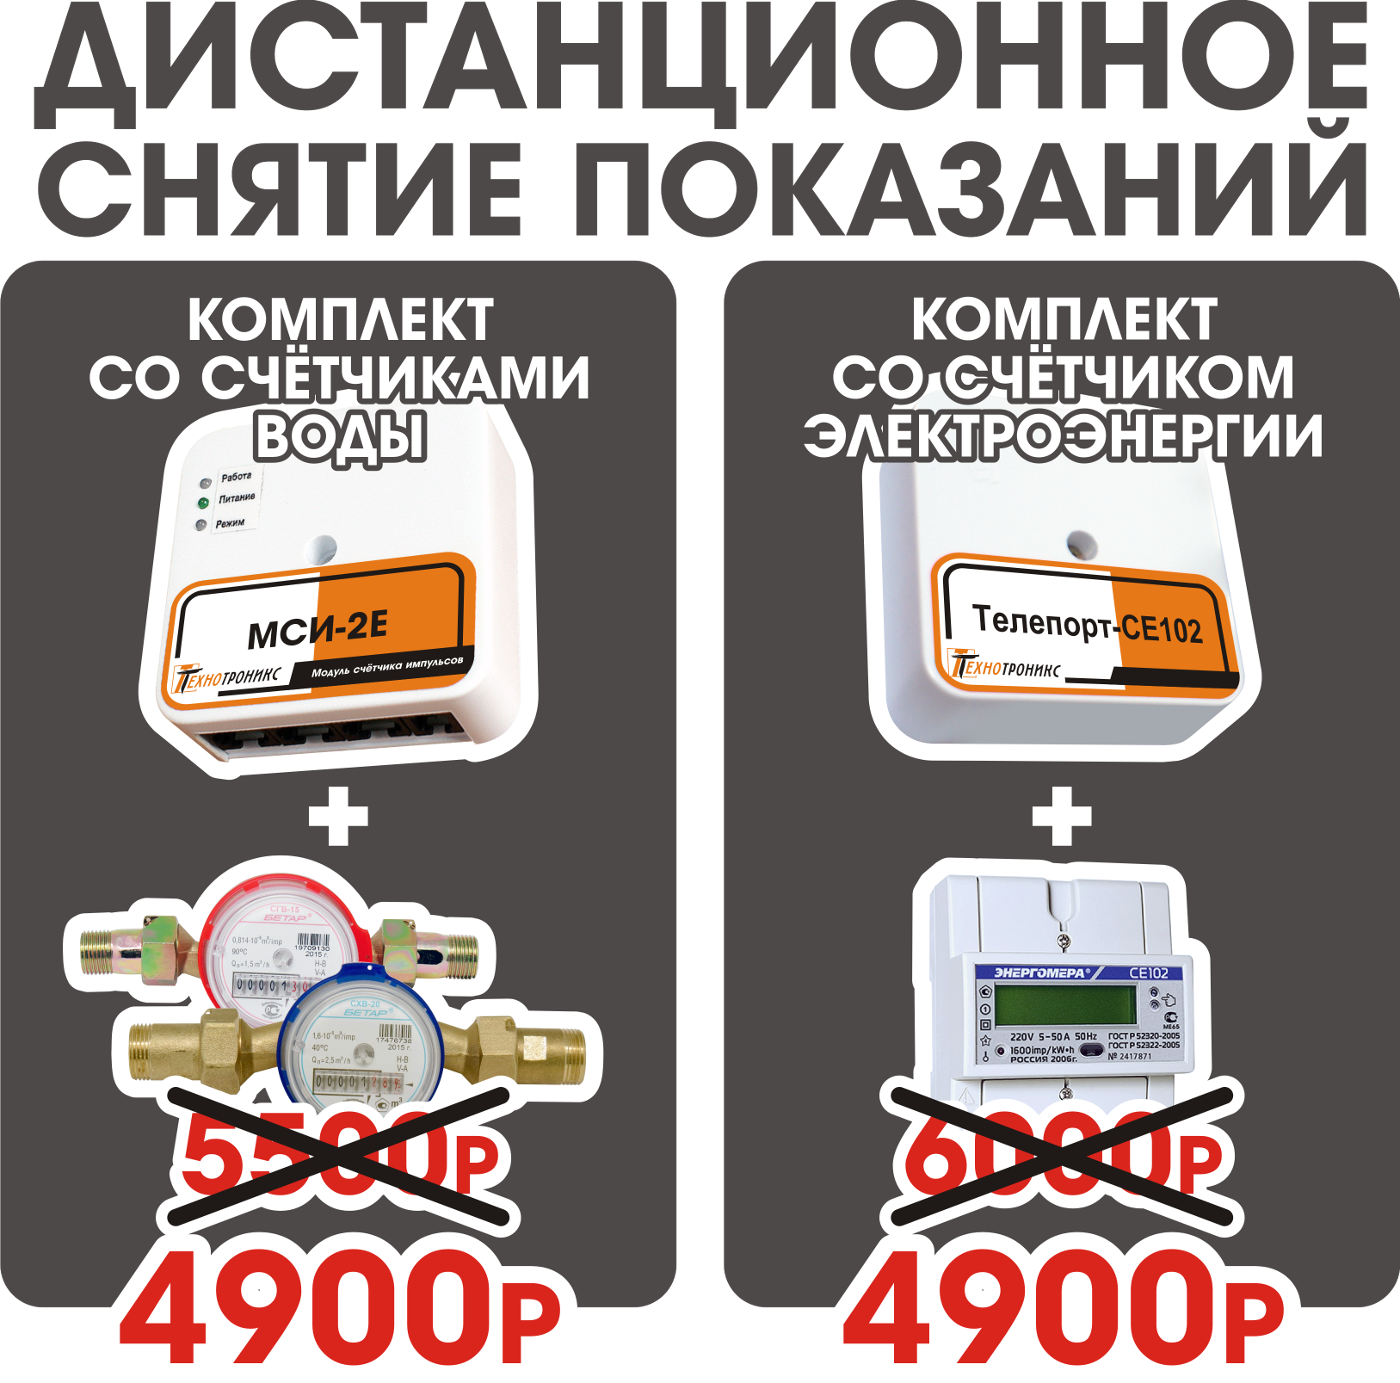 Цены и порядок проведения процедуры установки электросчетчика в санкт-петербурге и ленинградской области